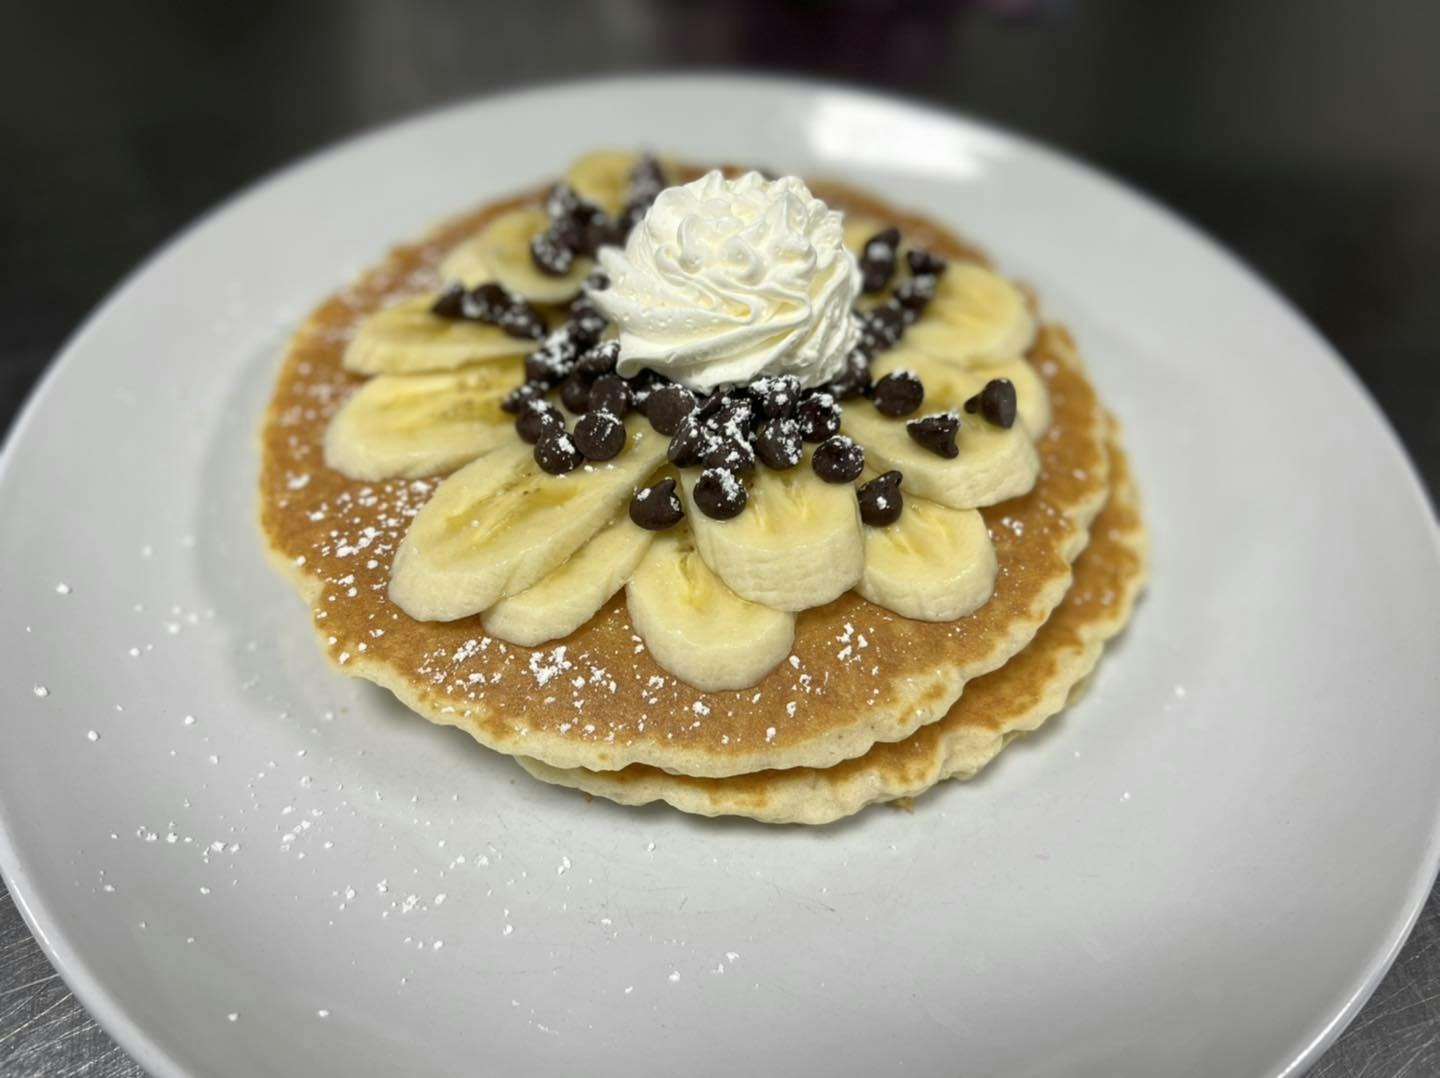 Era Pancakes & Cafe in Wausau - Highlight